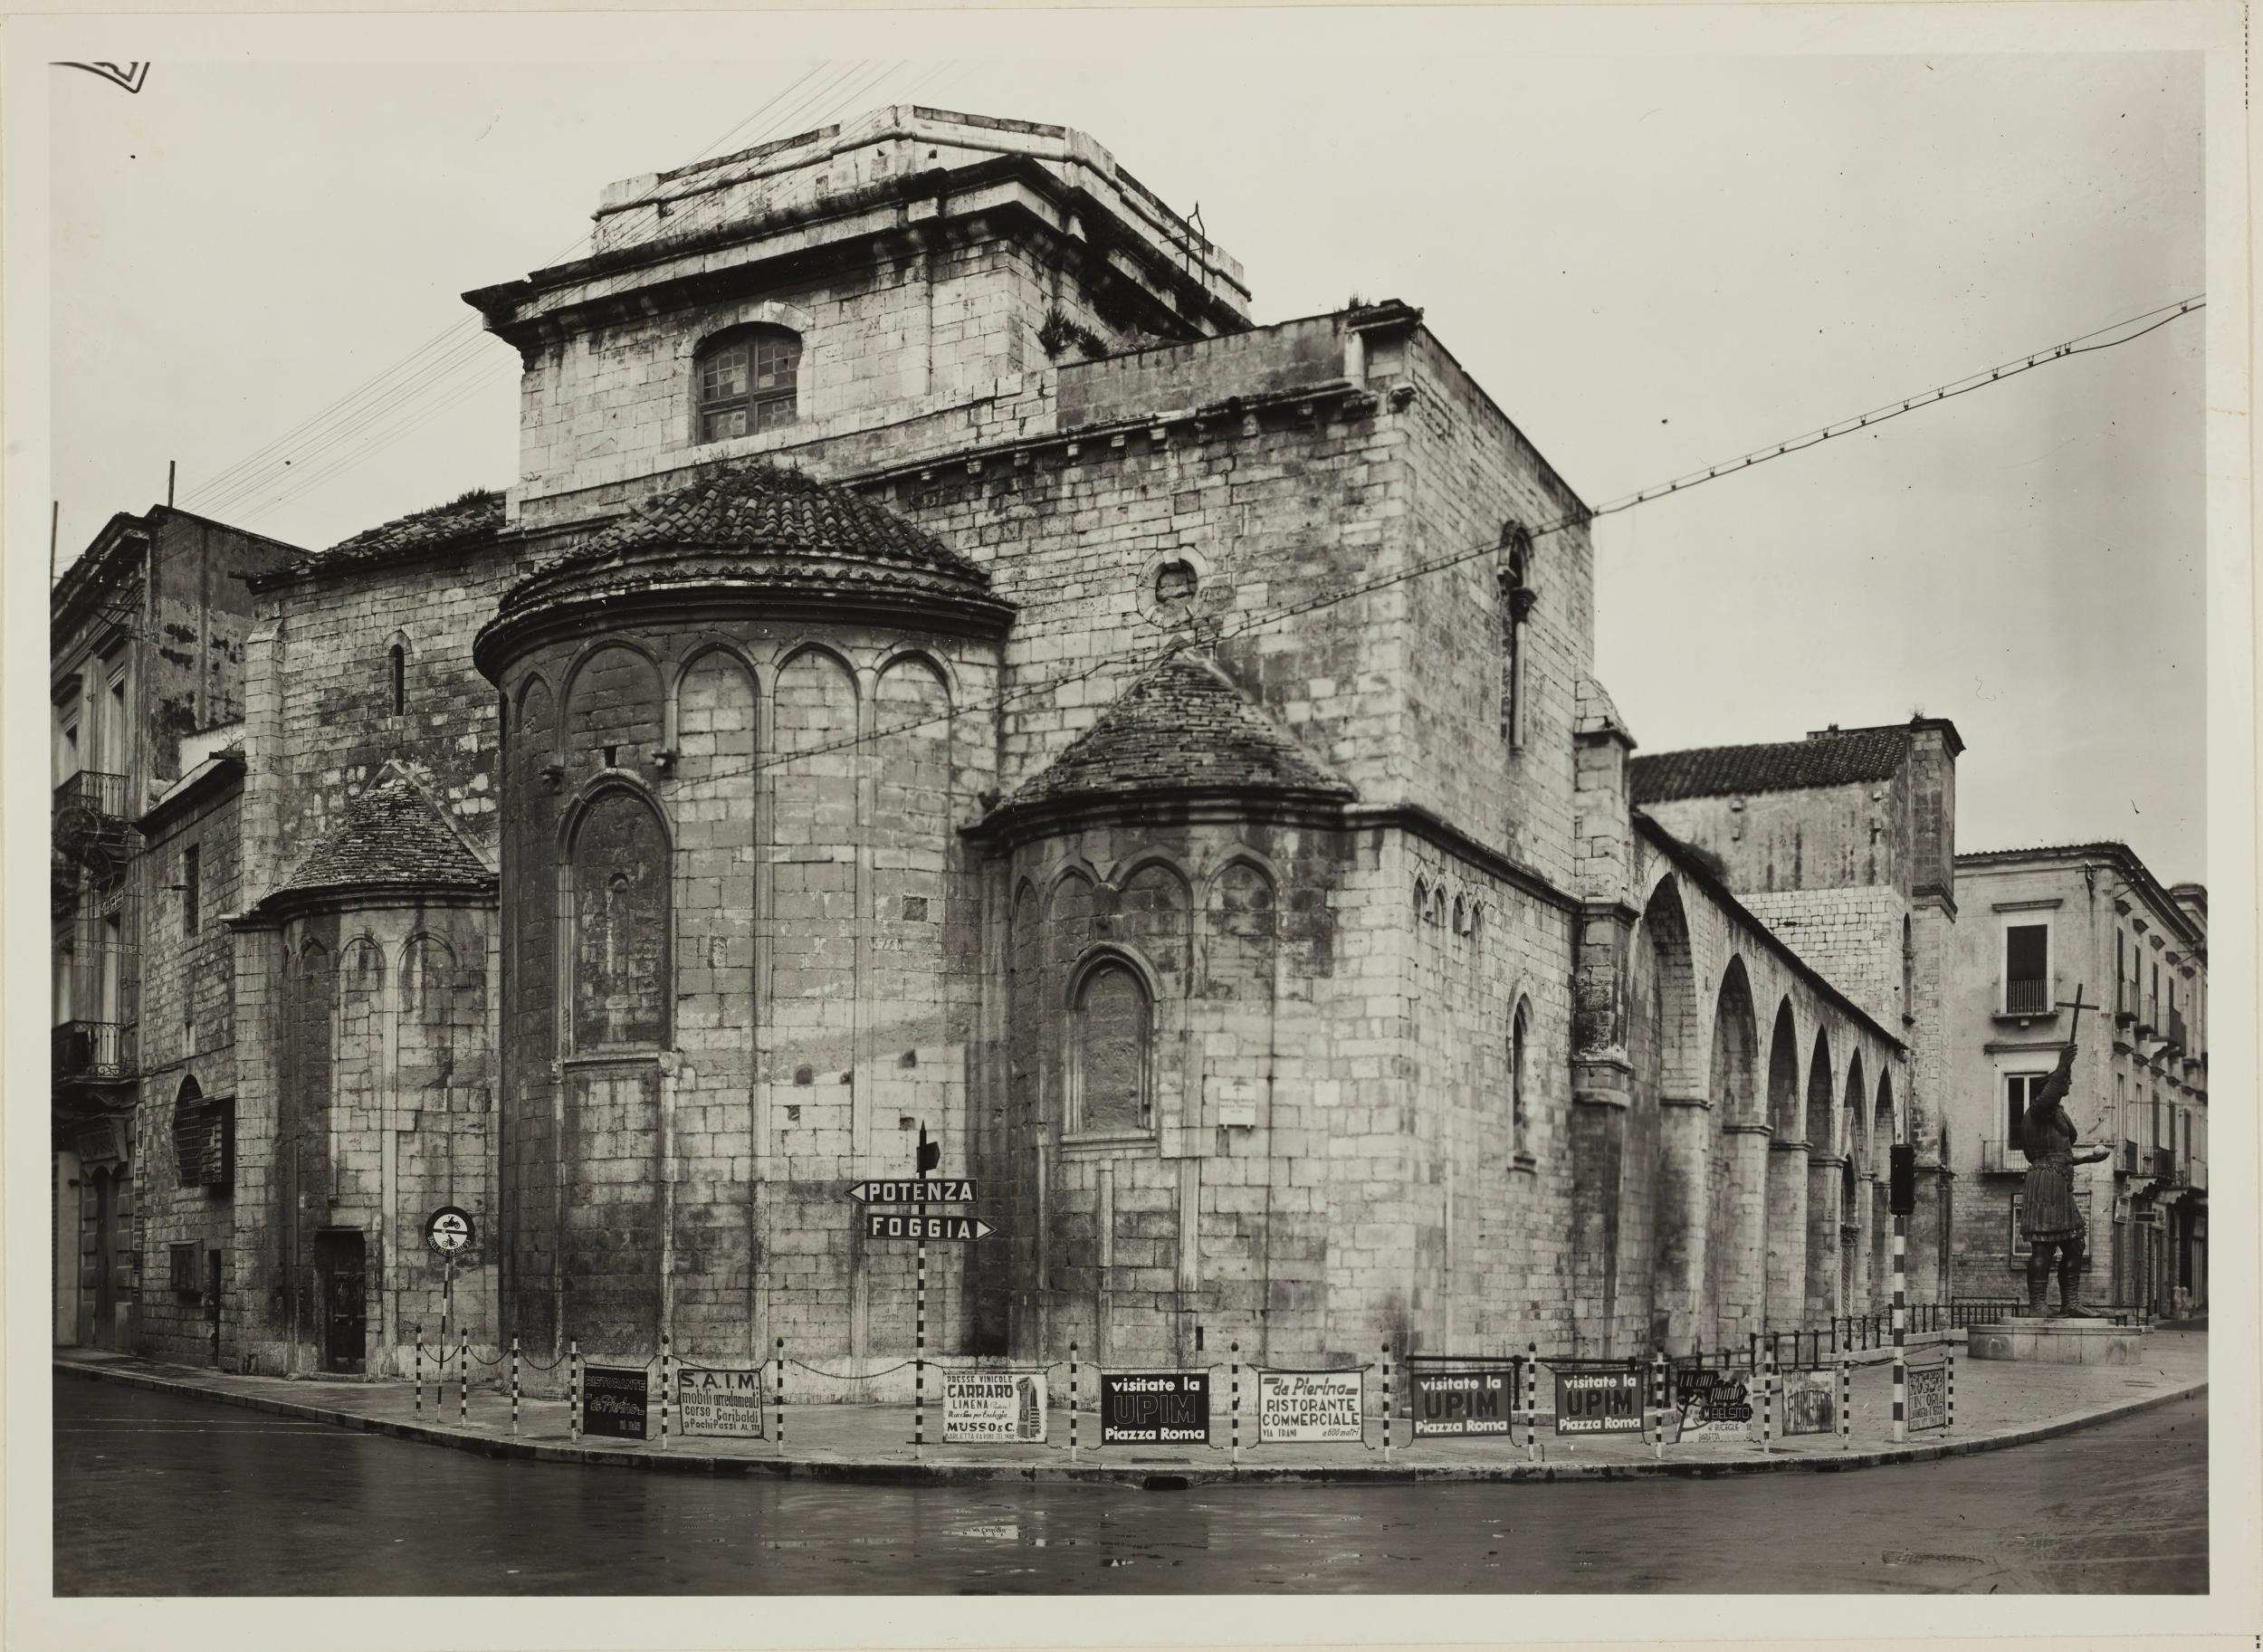 Fotografo non identificato, Barletta - Chiesa SS. Sepolcro, abside, 1956–1957, gelatina ai sali d'argento/carta, MPI6023029